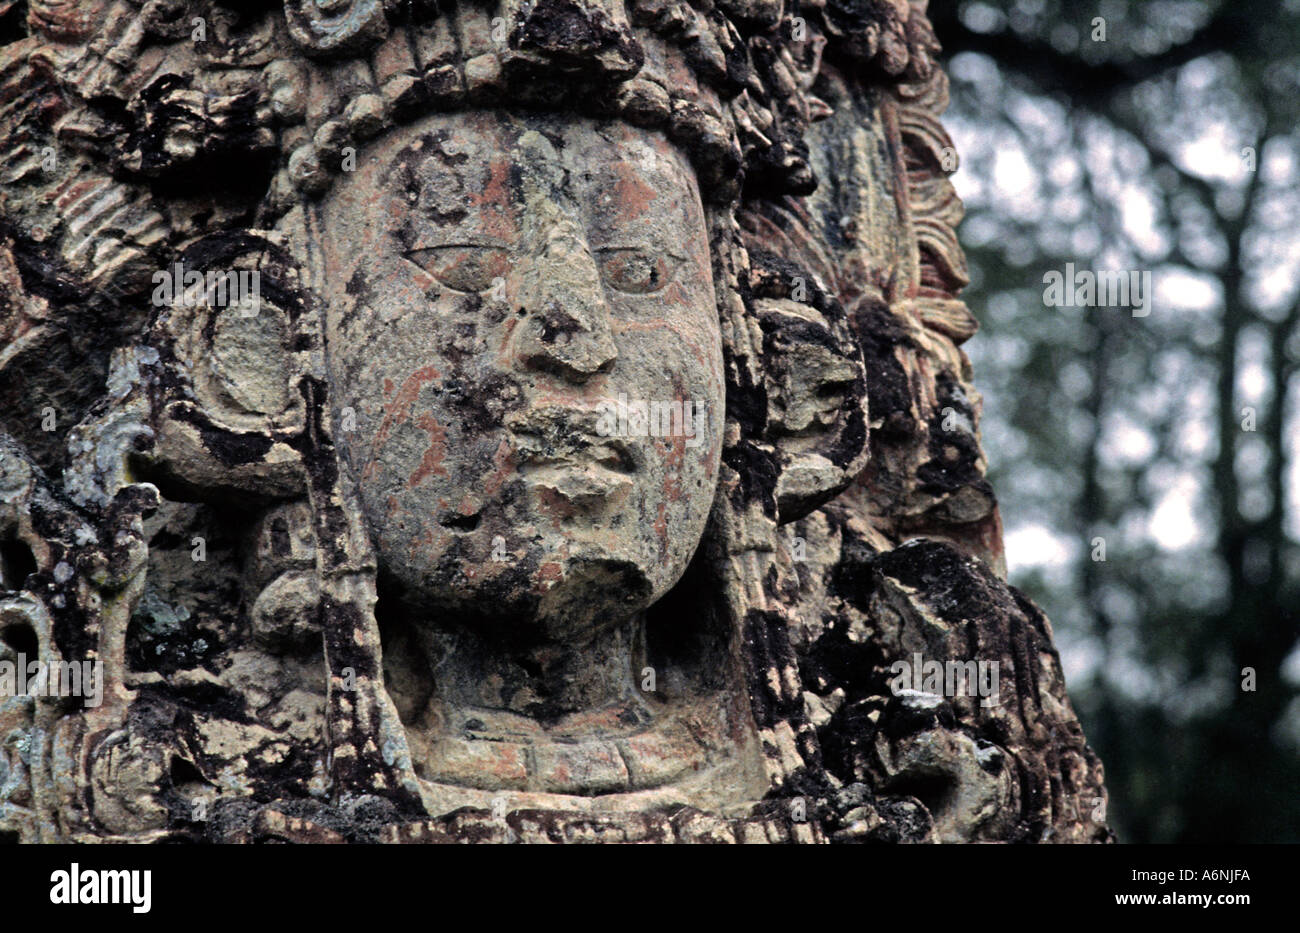 Stèle sculptée en pierre mégalithe représentant les anciens Mayas, fumée King Lapin 18 ruines mayas de Copan Honduras Amérique Centrale Banque D'Images